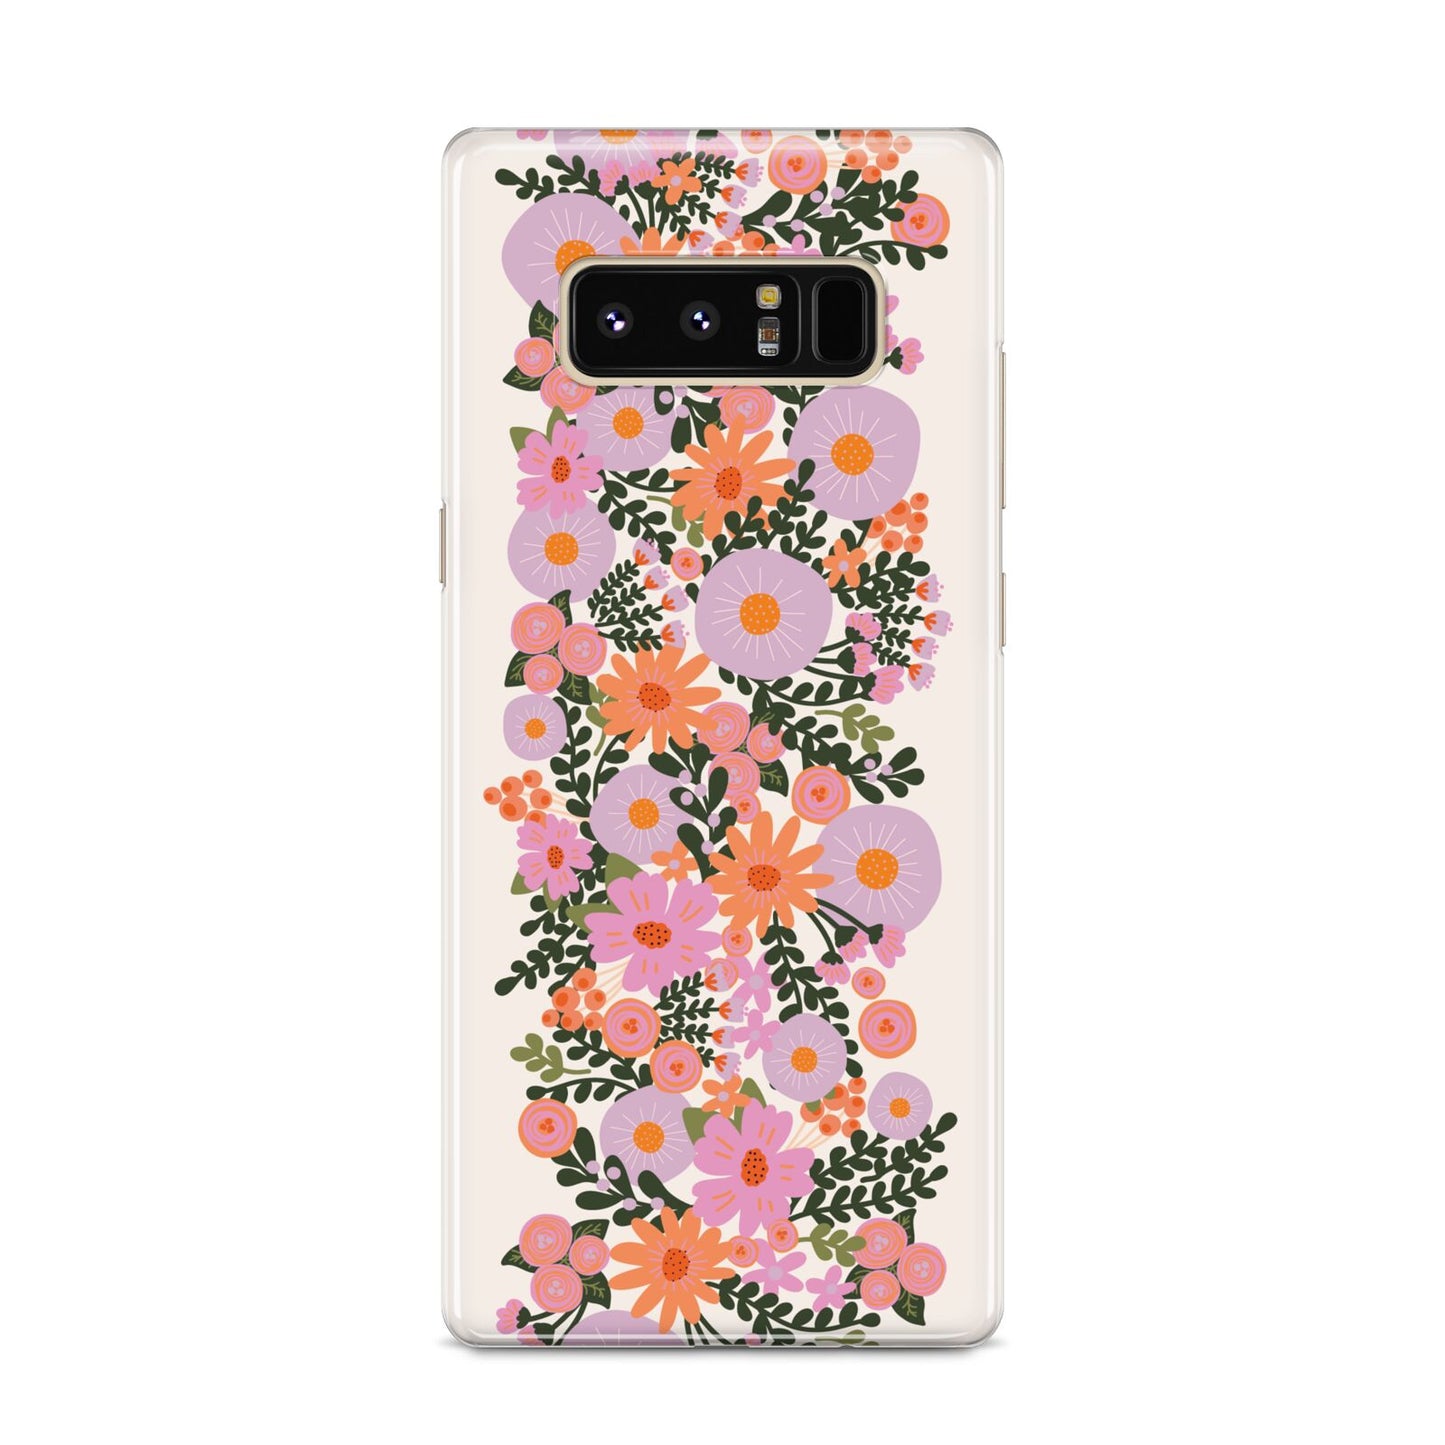 Floral Banner Pattern Samsung Galaxy S8 Case